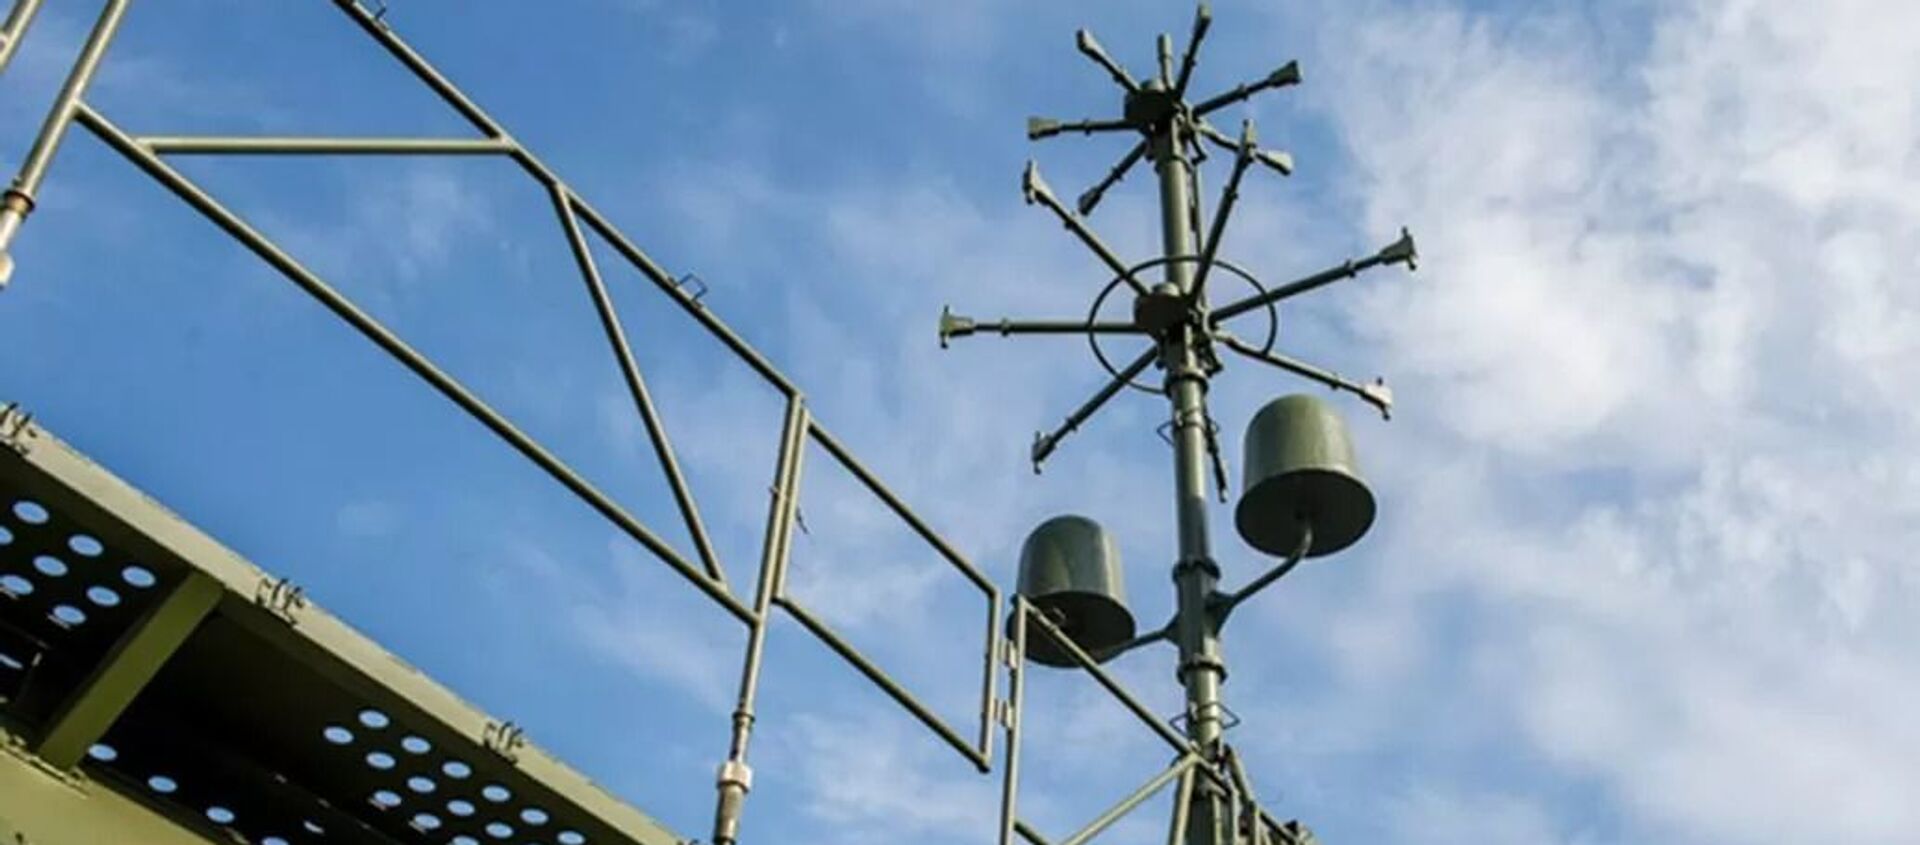 Автоматизированный звукотепловой комплекс артиллерийской разведки Пенициллин - Sputnik Армения, 1920, 22.01.2021